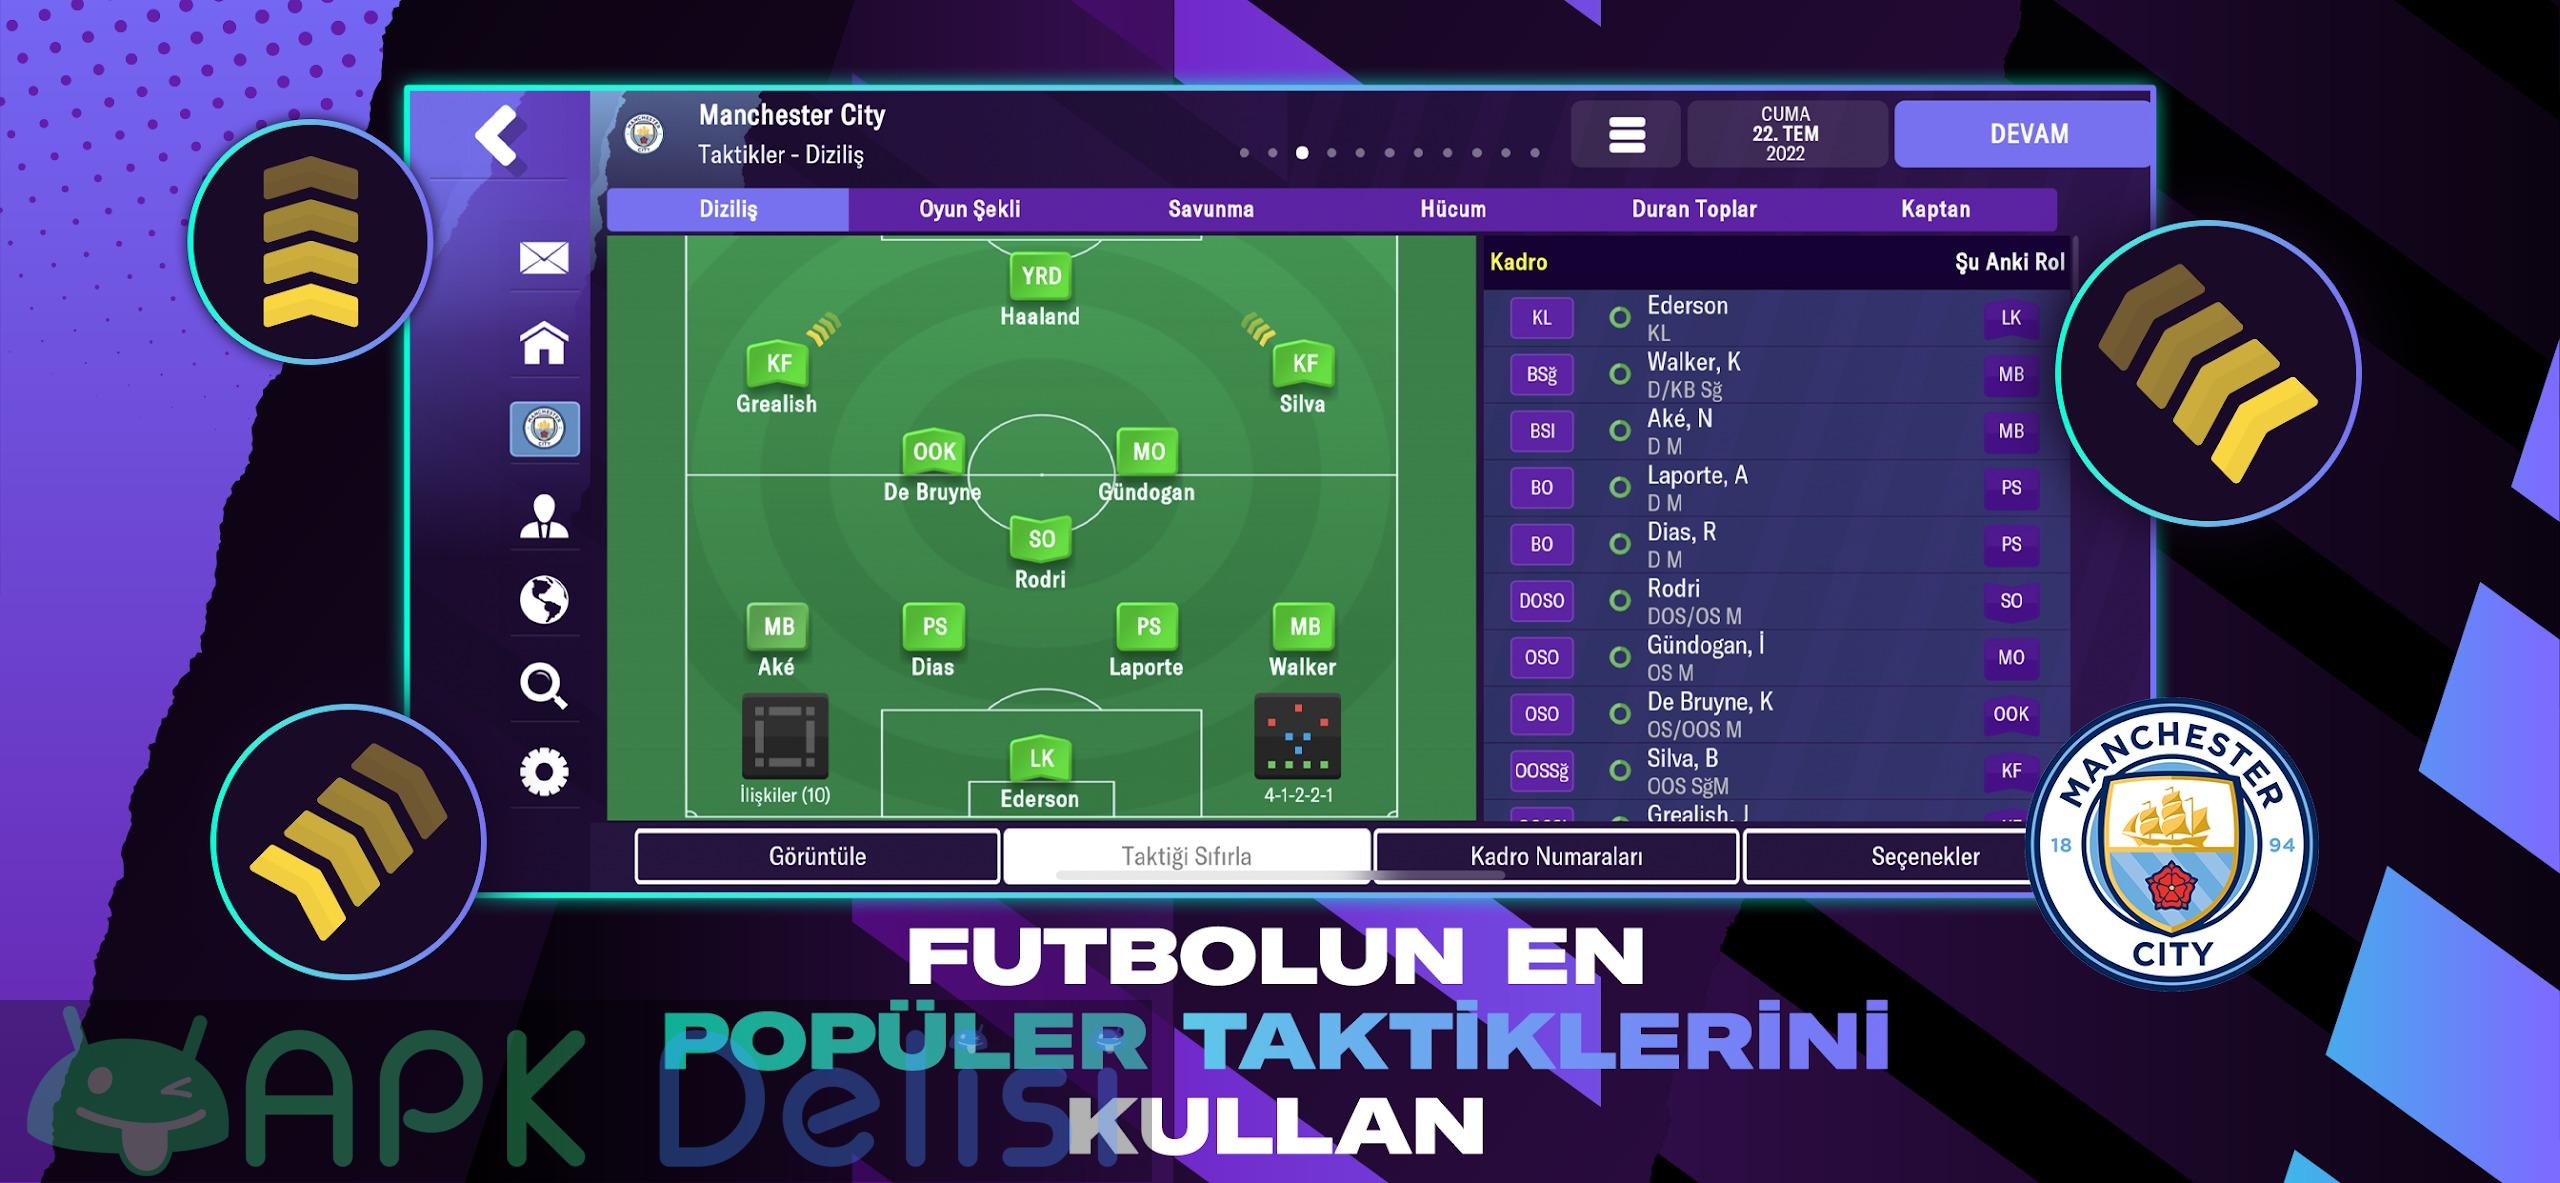 Football Manager 2023 Mobile v14.0.4 FULL APK — TAM SÜRÜM 4